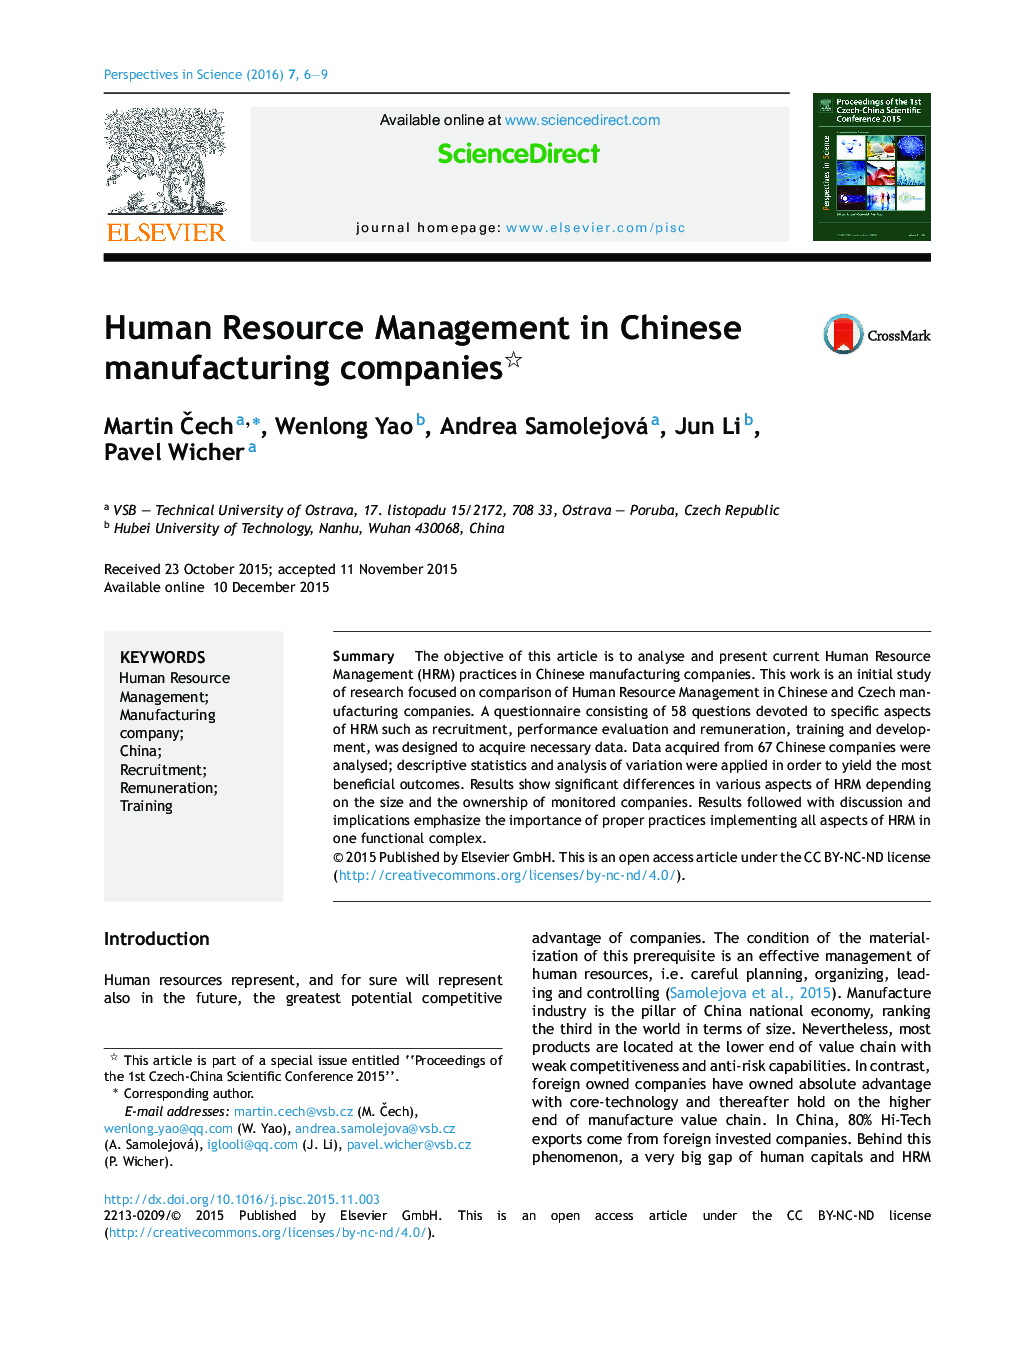 مدیریت منابع انسانی در شرکت های تولیدی چینی